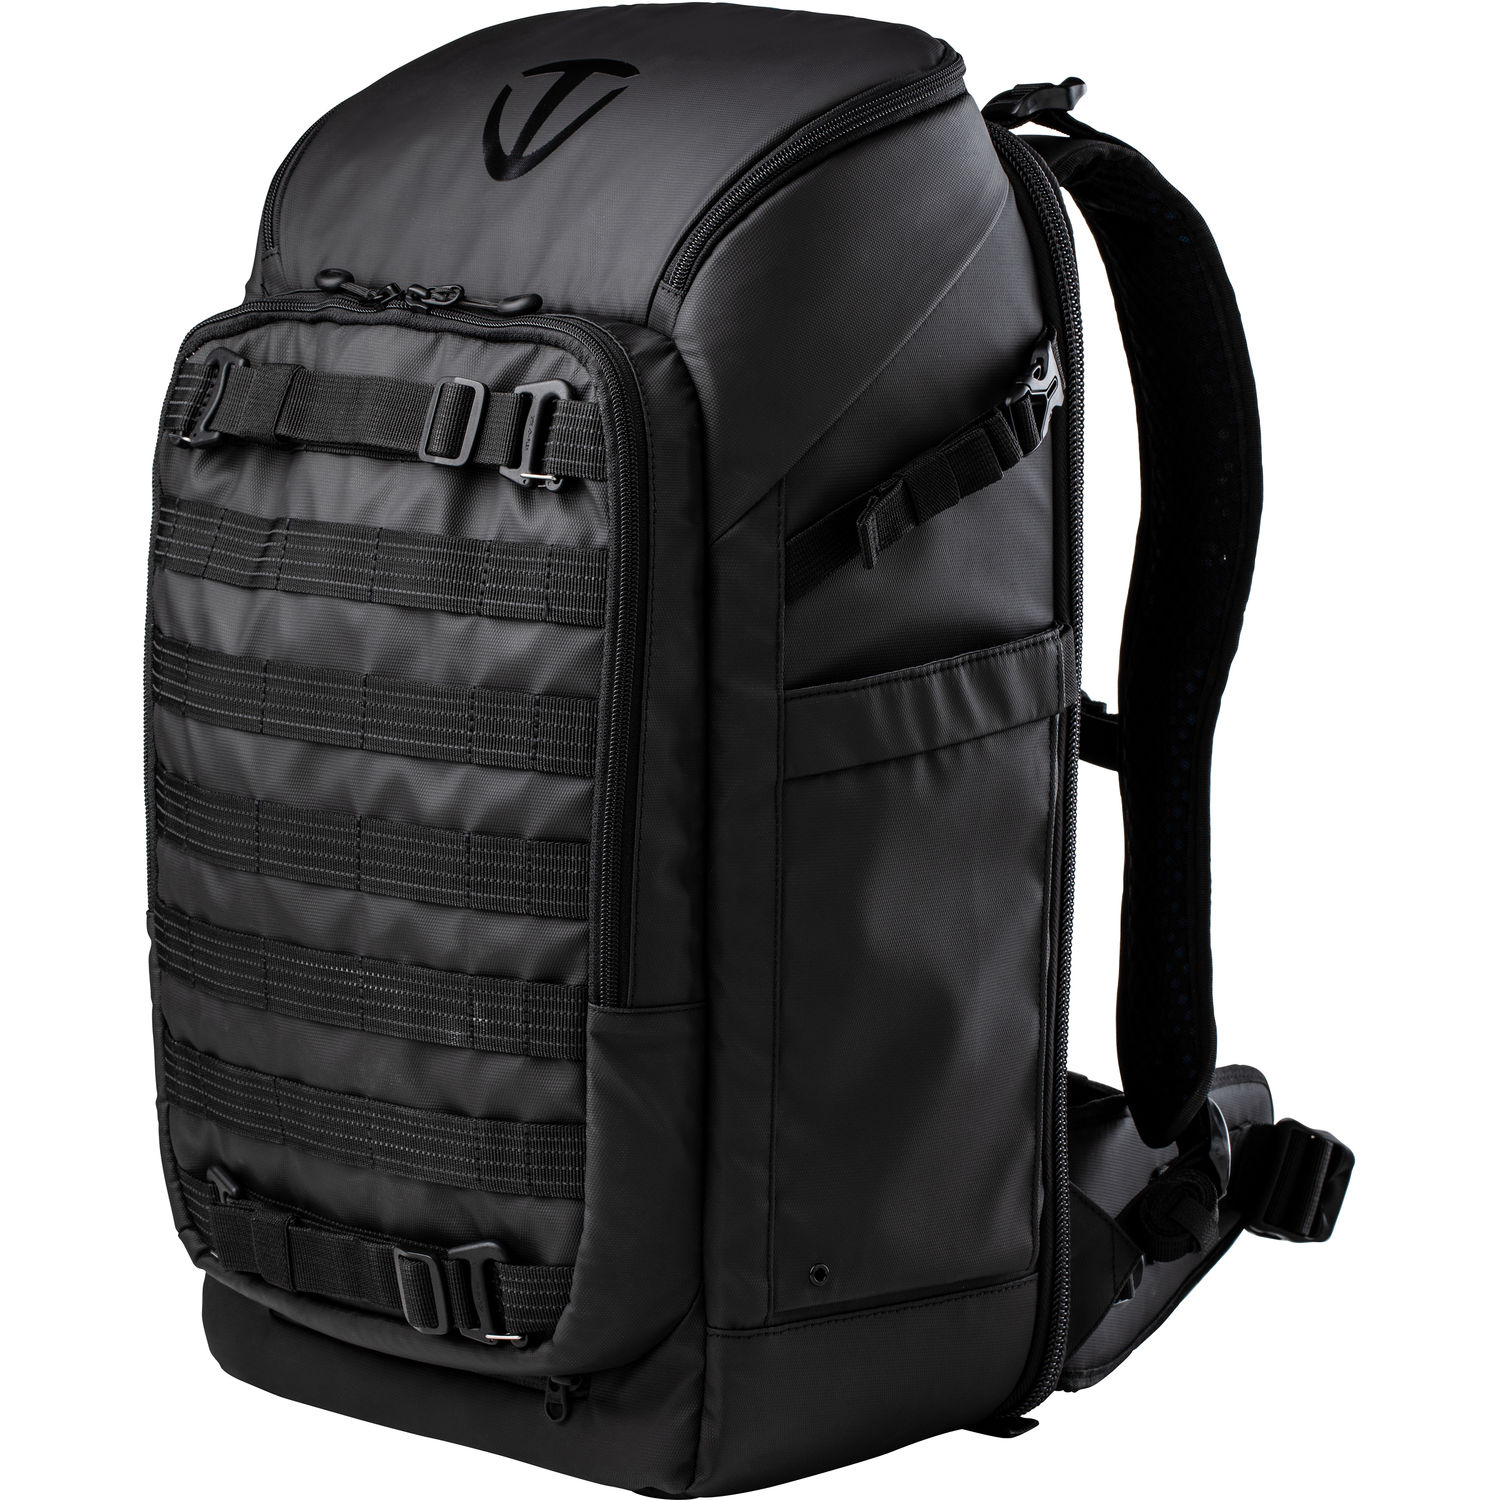 Tenba Axis 637-702 24L Backpack (Black)